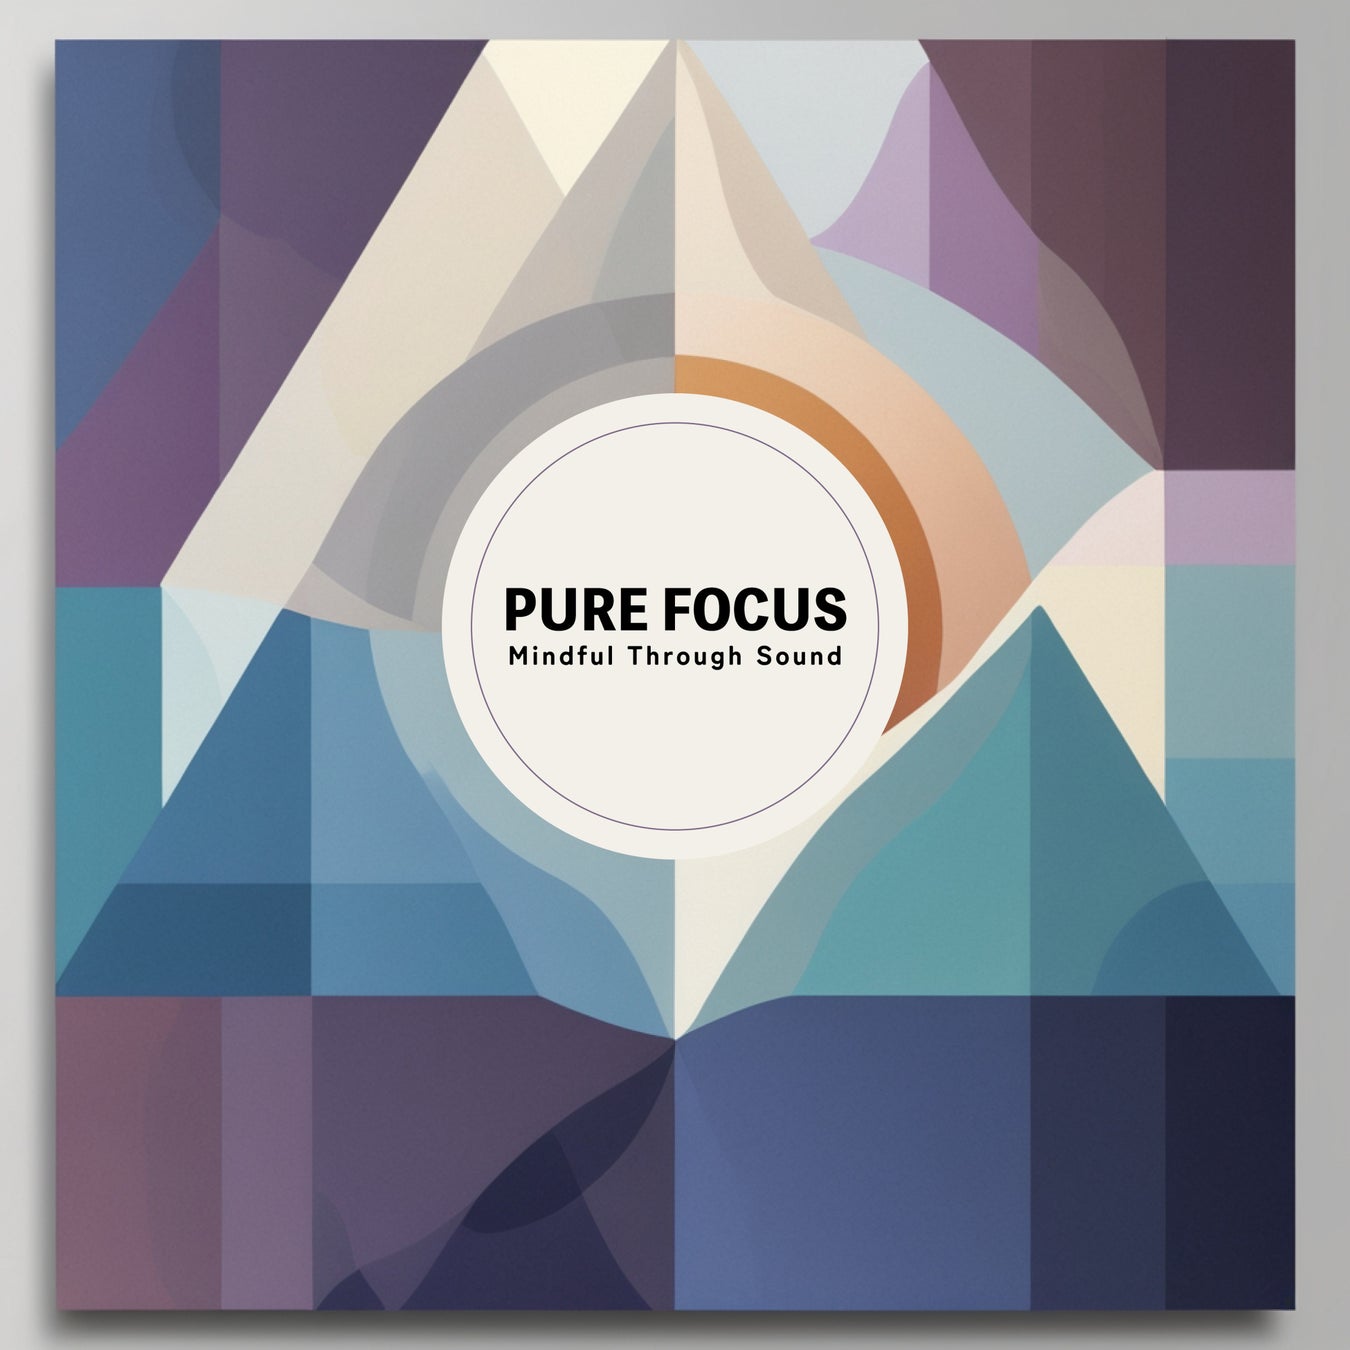 ヒーリングアーティストのCROIX HEALINGが新作アルバム『Pure Focus -Mindful Through Sound-』を発表！心の平静と集中力を高める音楽が7月19日より配信開始。